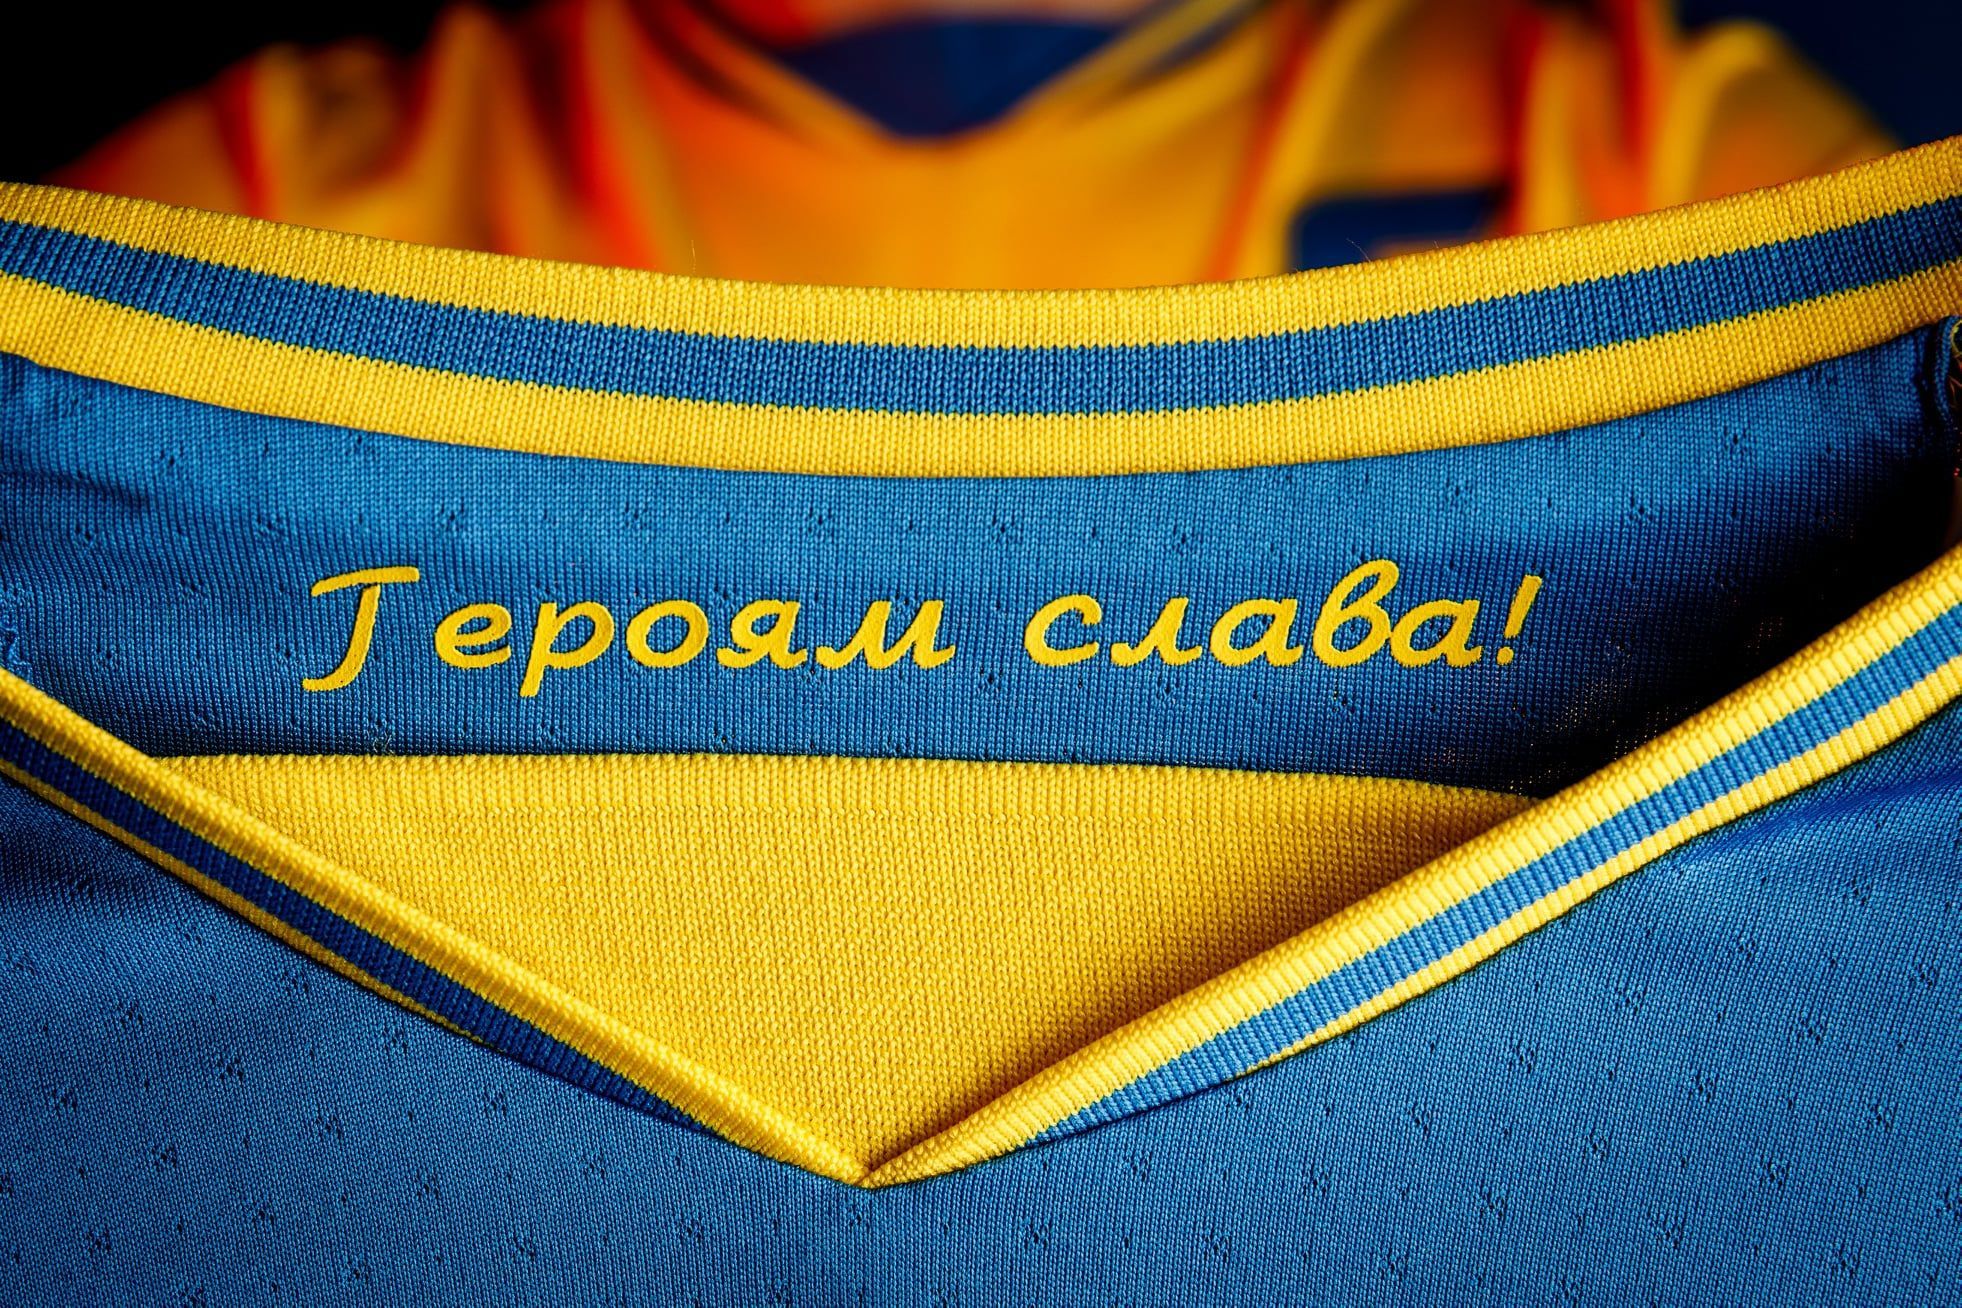 В Україні офіційно прокоментували заборону використовувати "Героям слава" на формі збірної